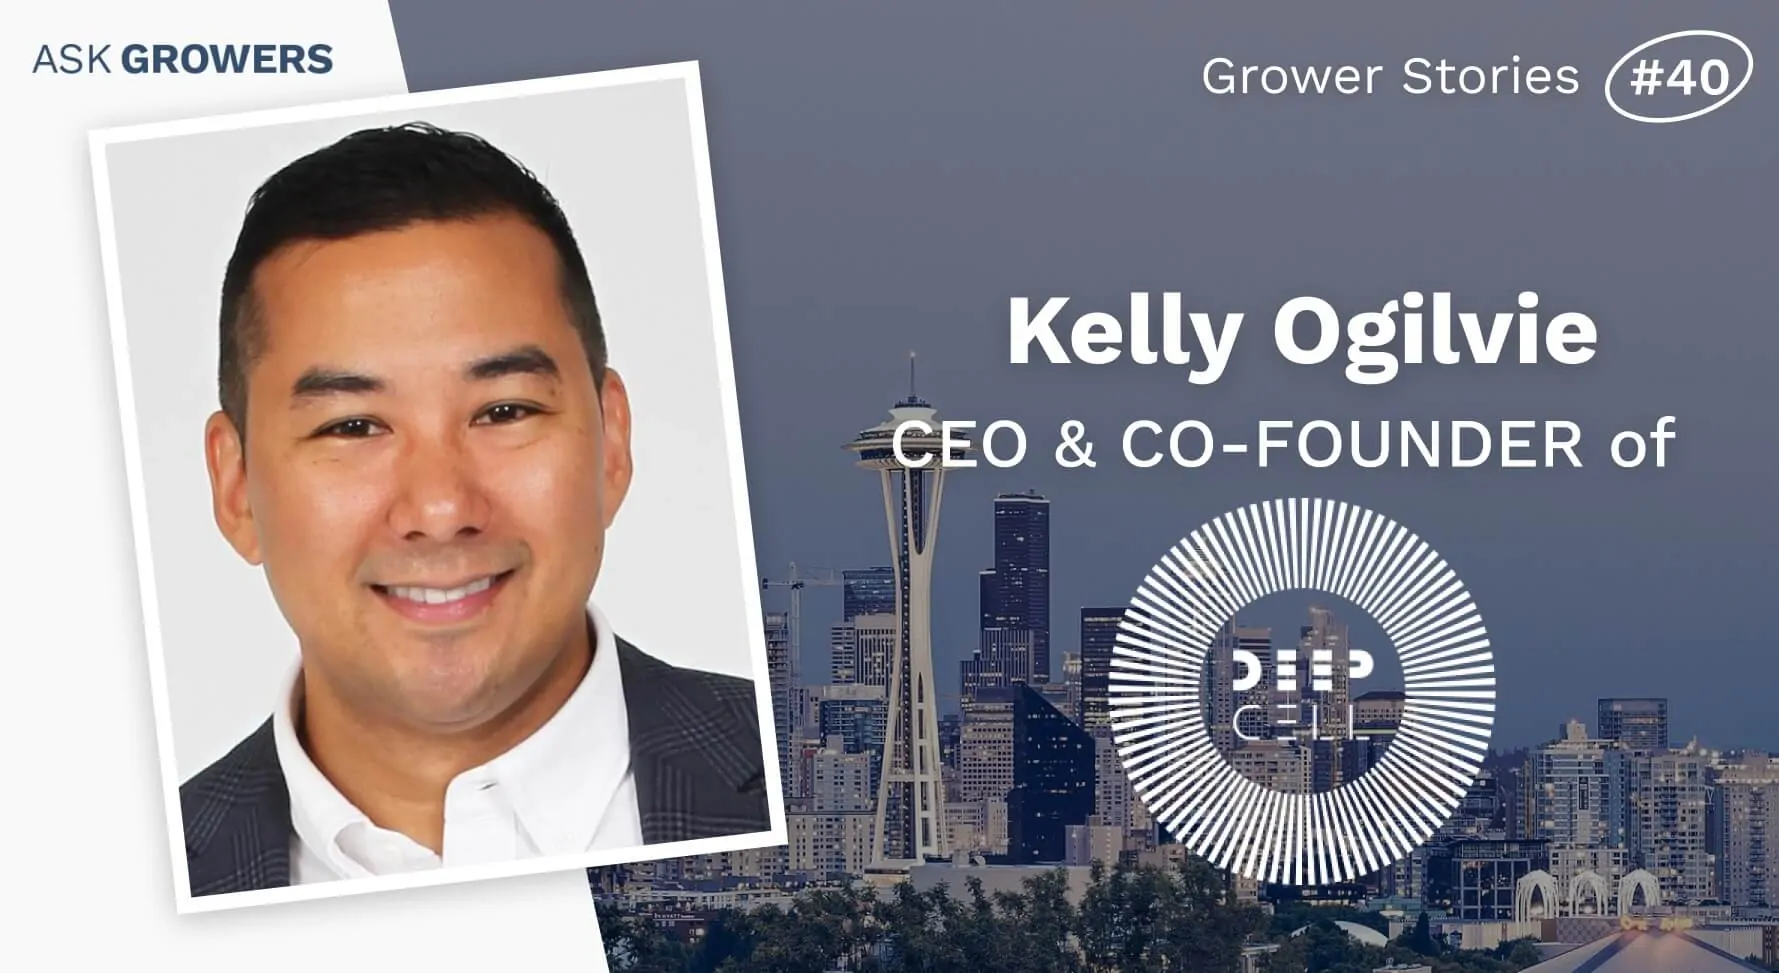 Grower Stories #40: Kelly Ogilvie